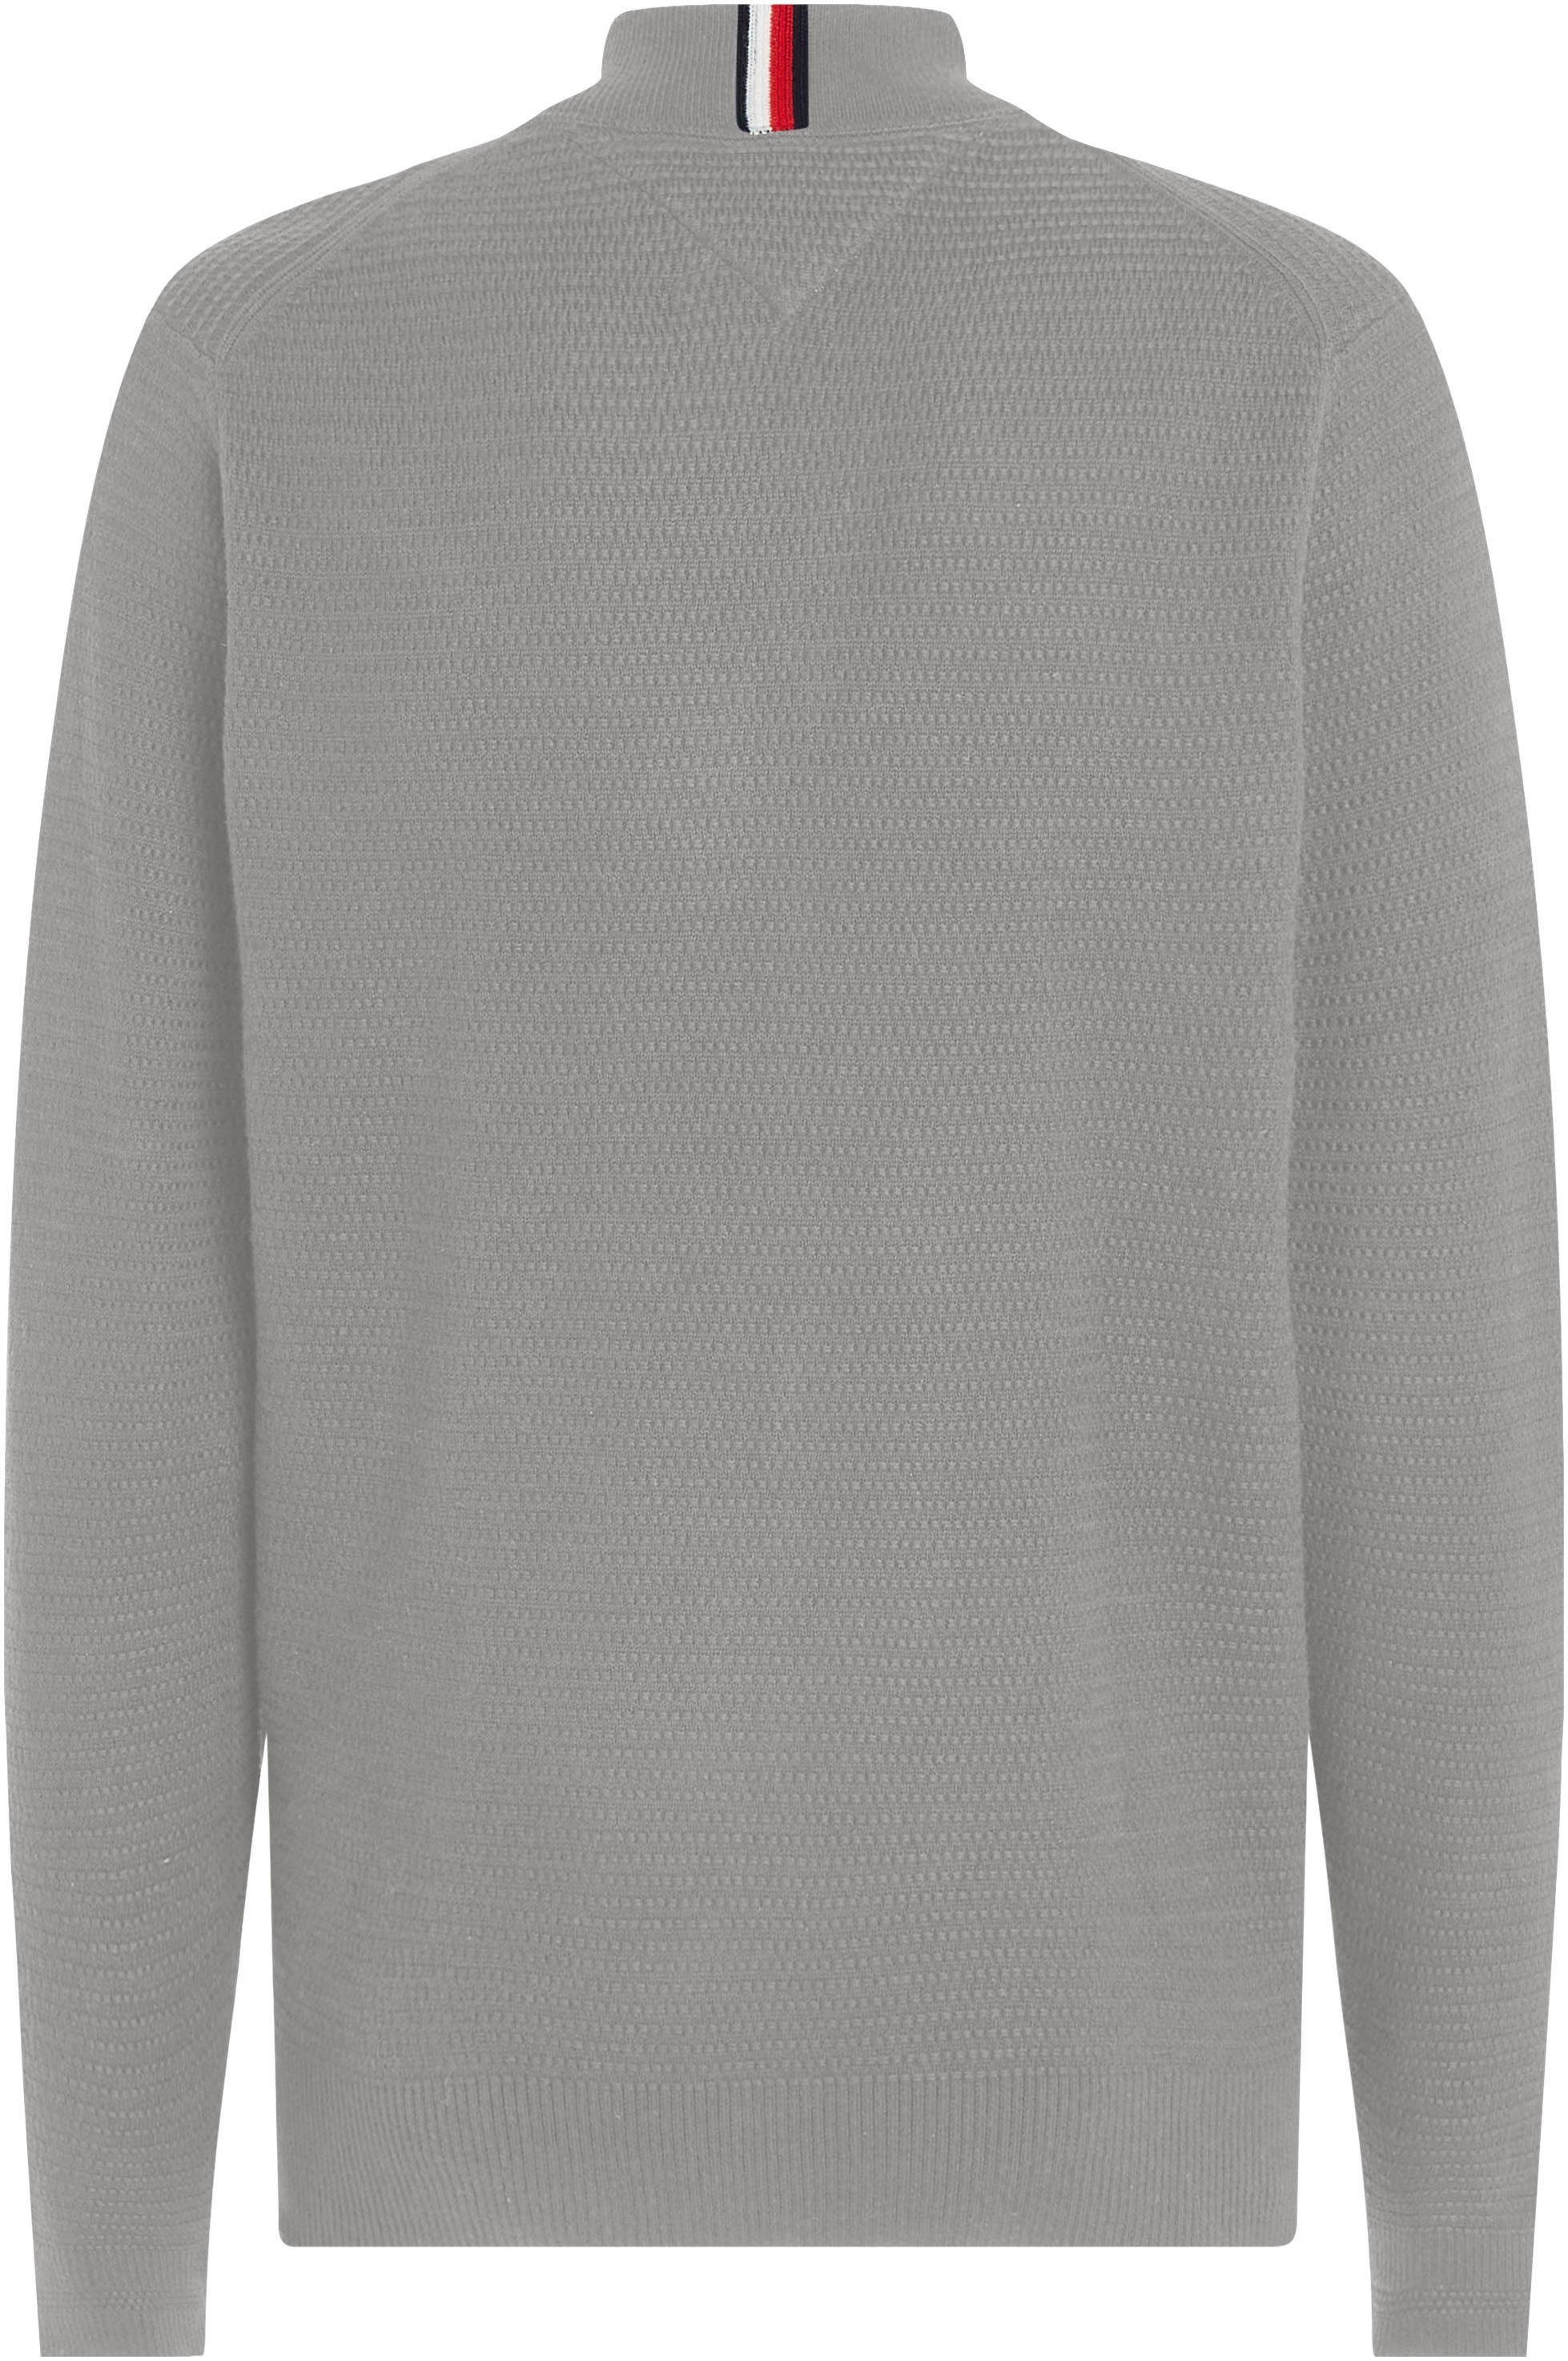 Tommy Hilfiger Sweatshirt INTERLACED in strukturierter Optik BASEBALL Medium THROUGH Grey Heather ZIP